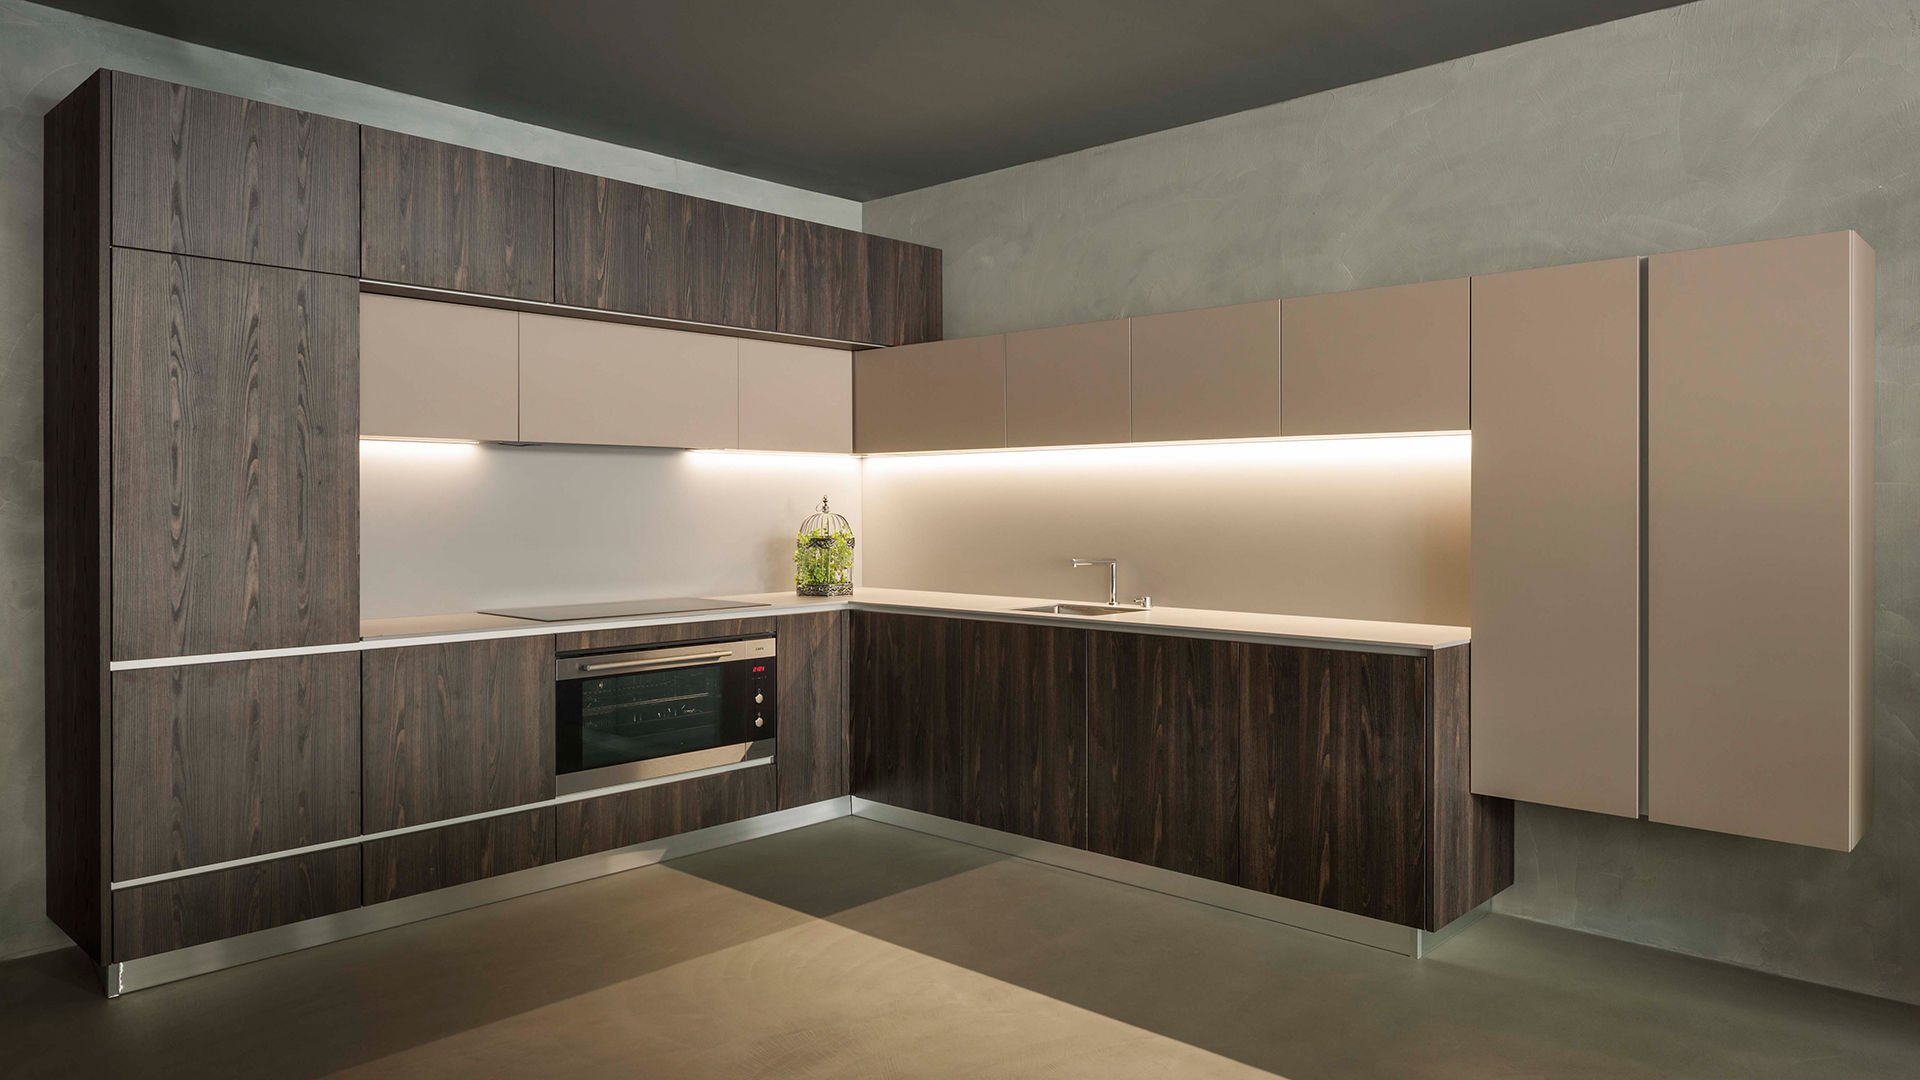 Linha Natur, dlcozinhas dlcozinhas Modern style kitchen Engineered Wood Transparent Storage